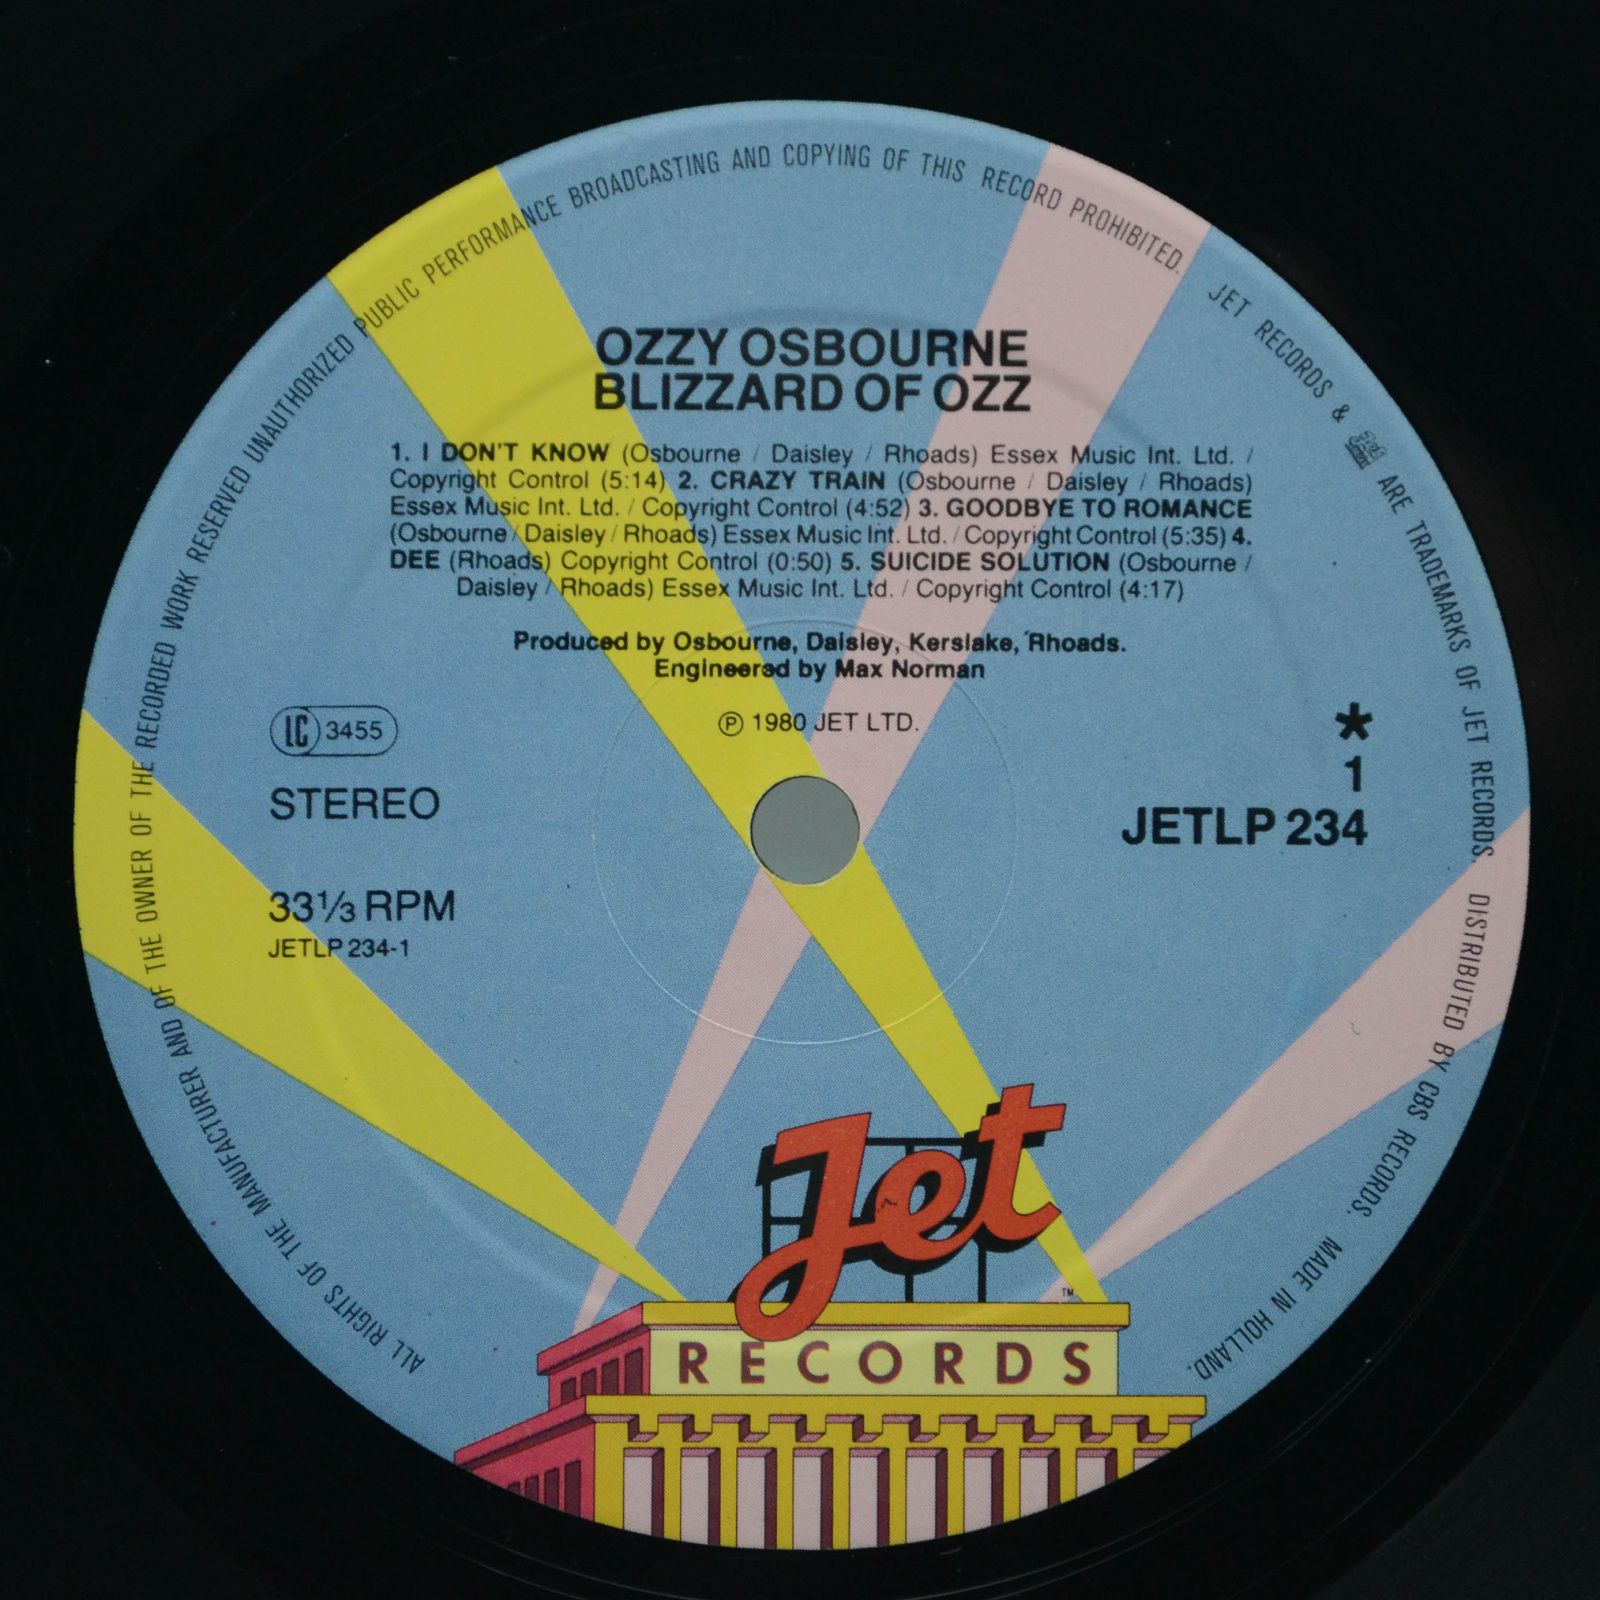 Ozzy Osbourne — Blizzard Of Ozz, 1980